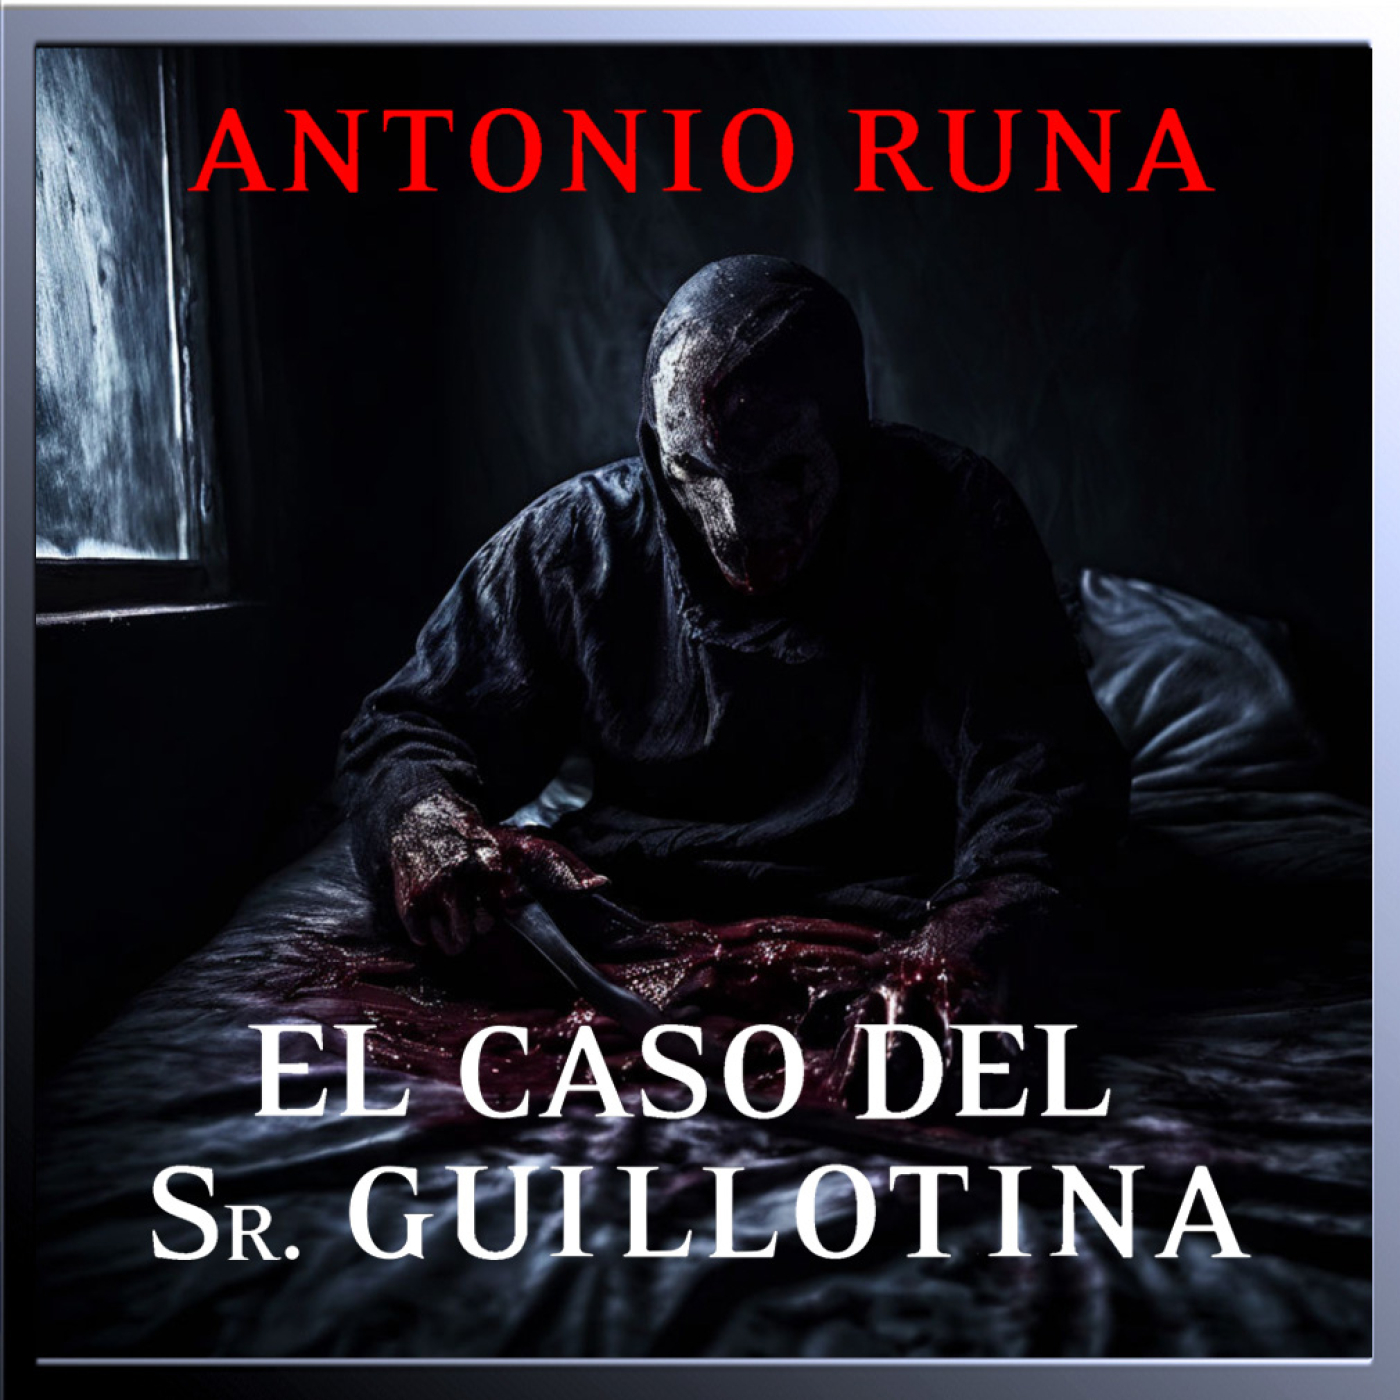 EL CASO DEL SR. GUILLOTINA de Antonio Runa – Relato completo